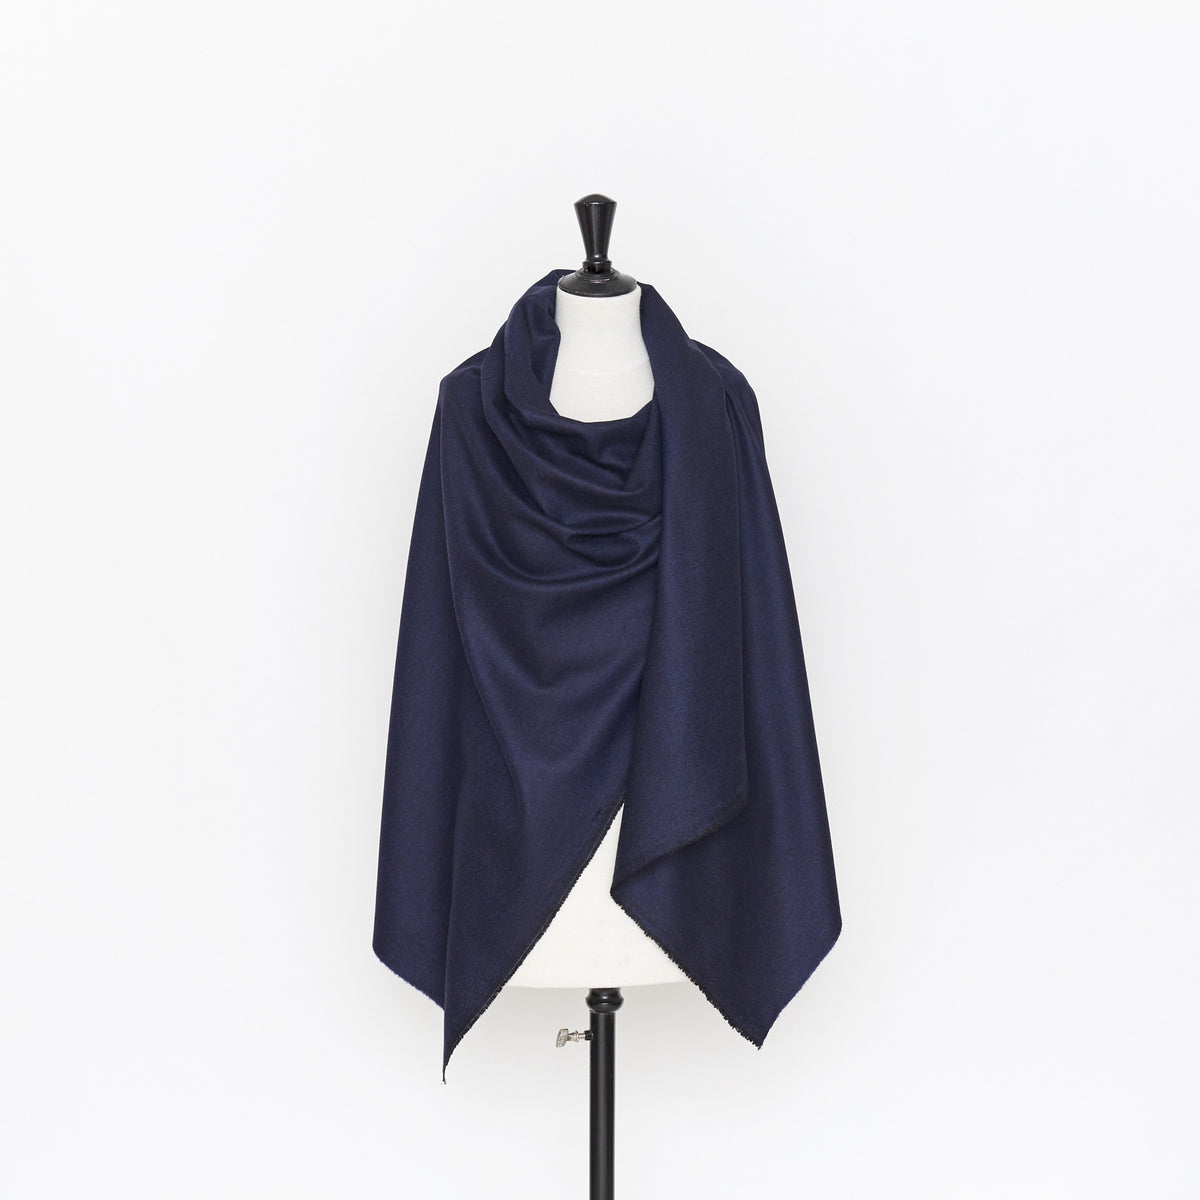 T22E00699 | Fine Wool & Silk Melange Suiting